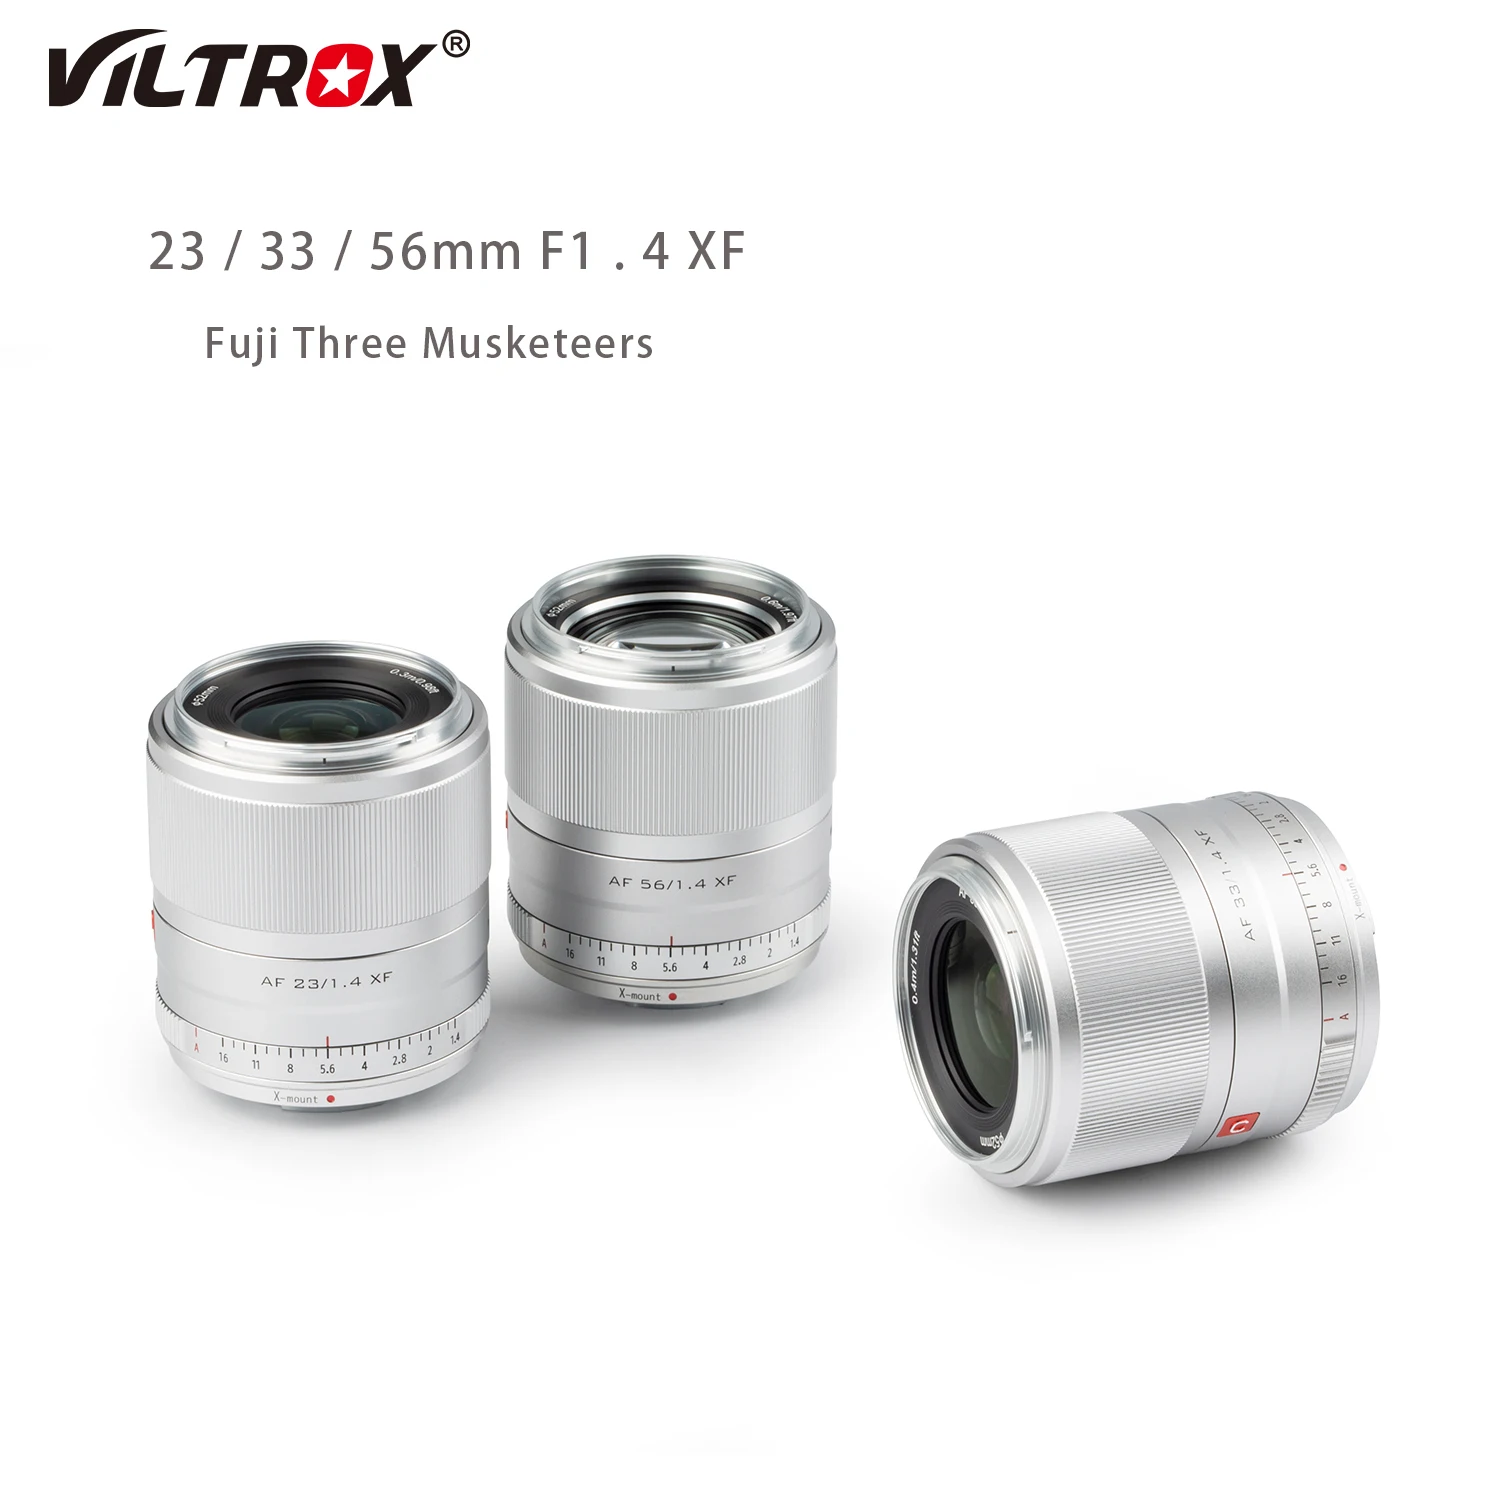 

Viltrox 23mm 33mm 56mm F1.4 X Fuji Lesn Auto Focus Large Aperture APS-C Lens For Fujifilm Lens Fuji XF Mount X20 T30 Camera Lens